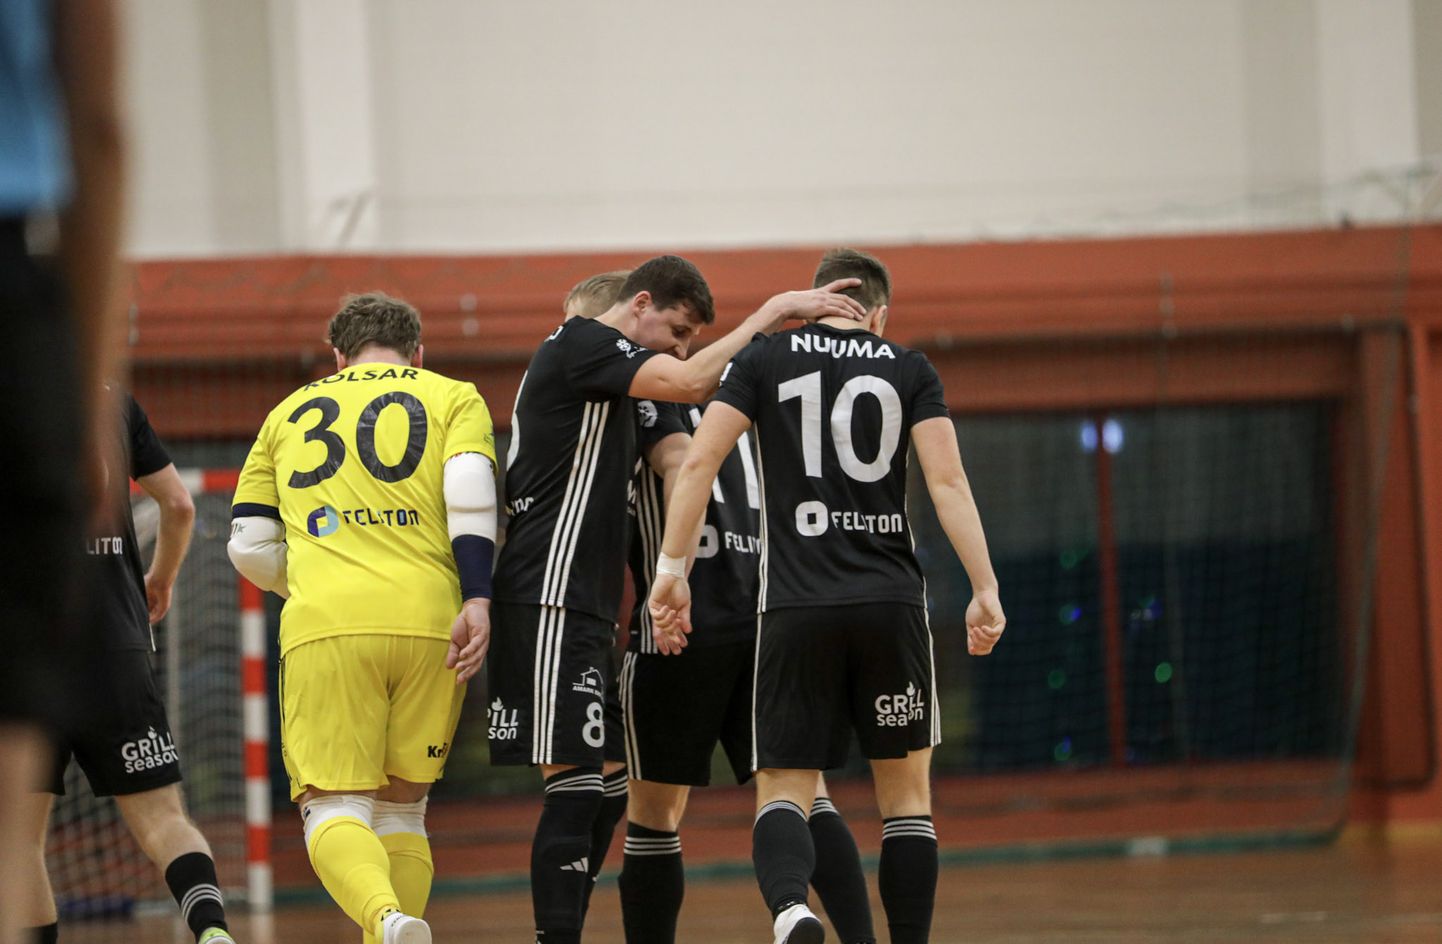 Tartu Vald Ravens Futsal pidi kolme kohtumise järel tunnistama Tallinna Bunker Partneri paremust, mis tähendab, et tartlased mängivad nüüd ponksile.